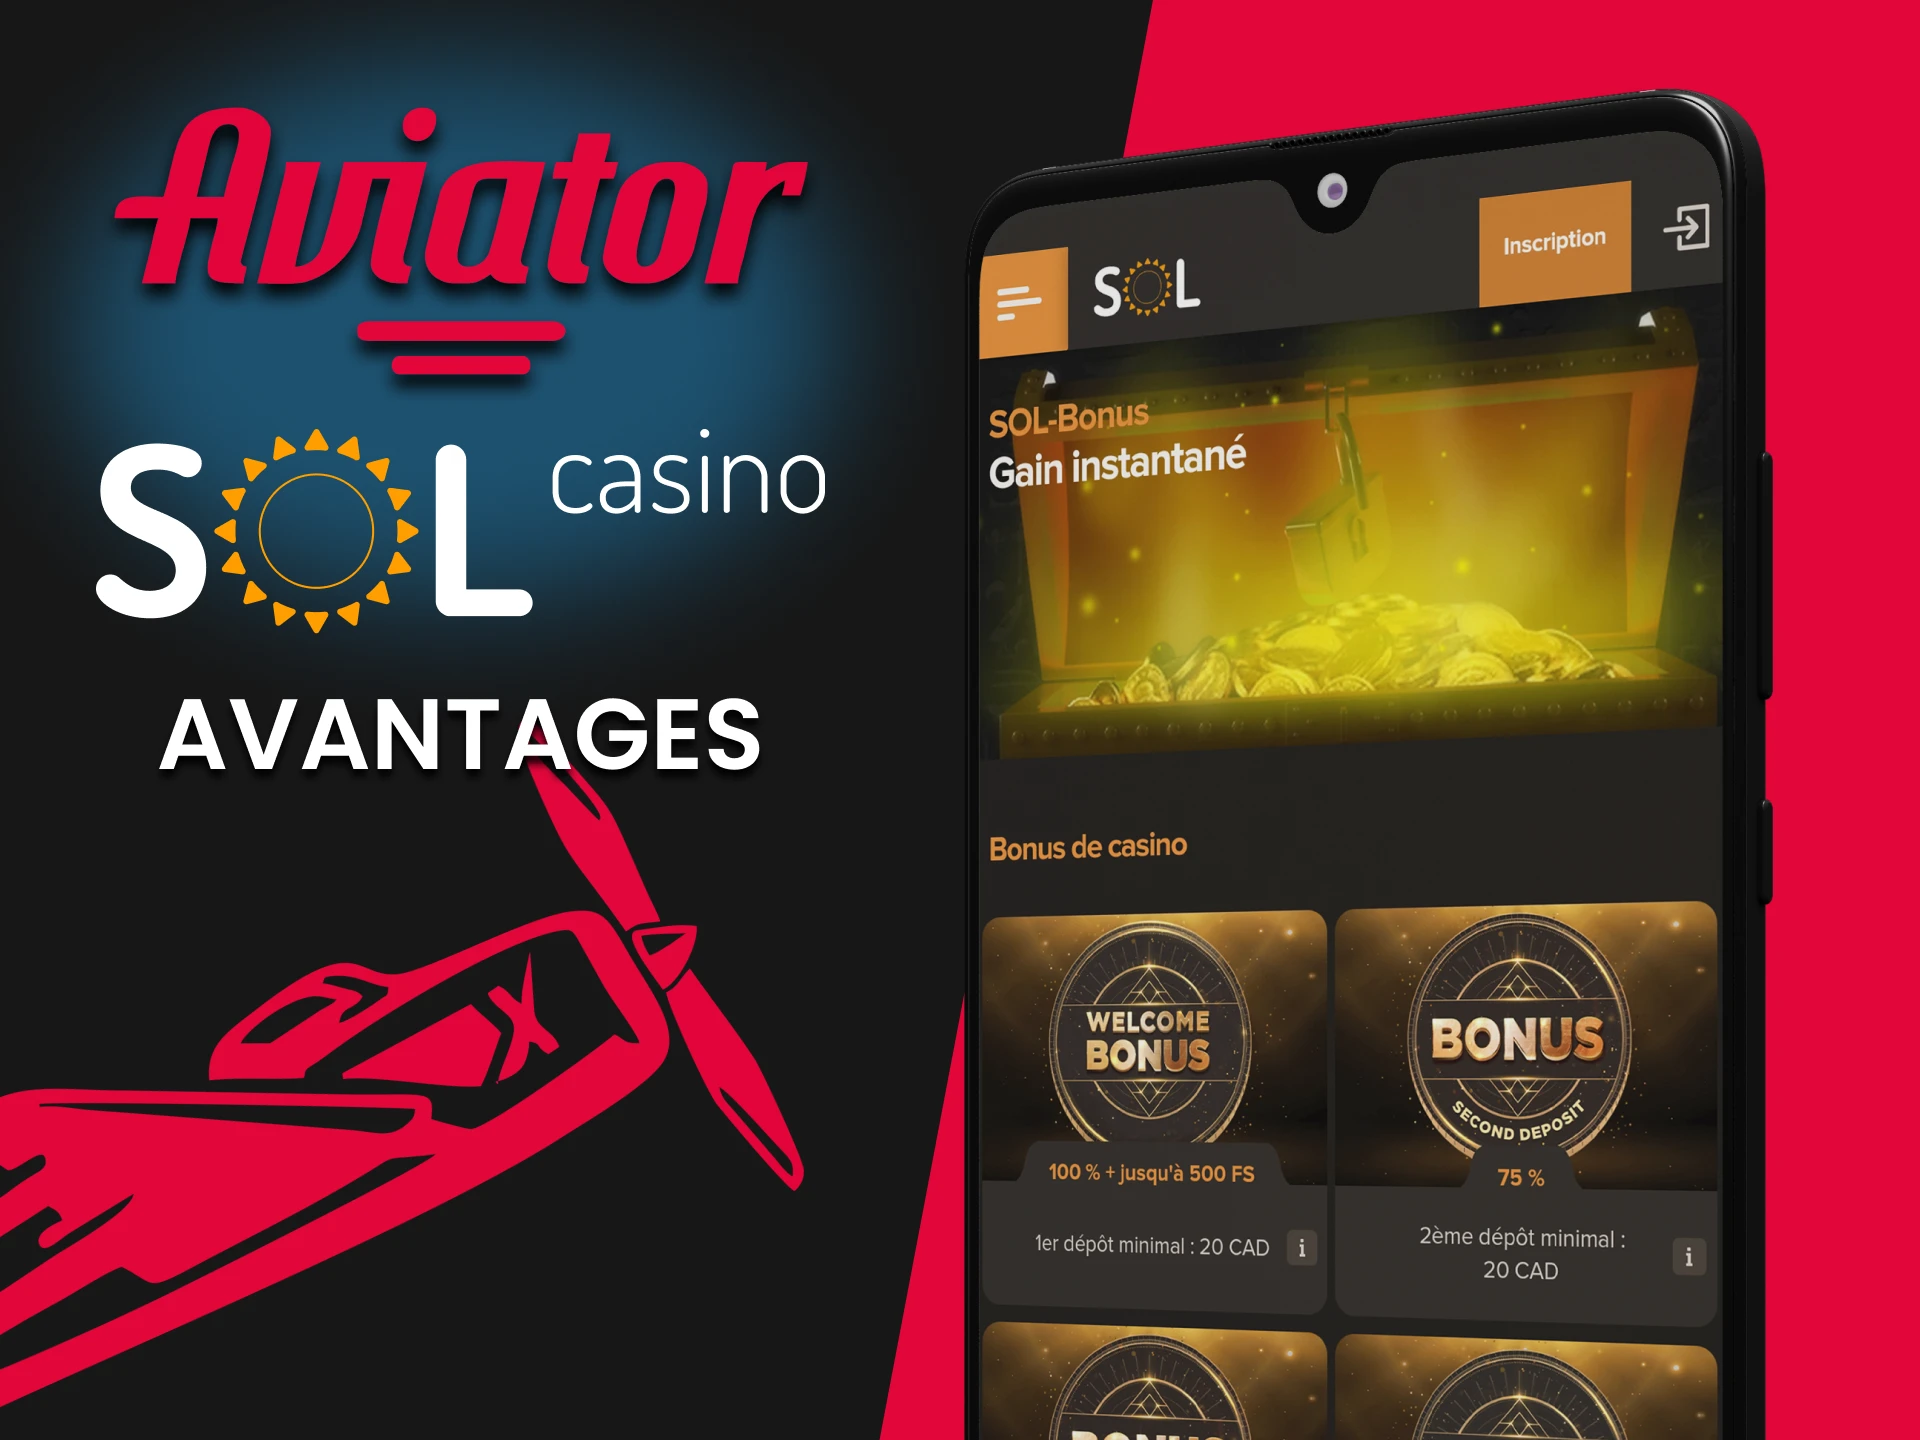 Sol Casino présente de nombreux avantages pour jouer à Aviator.